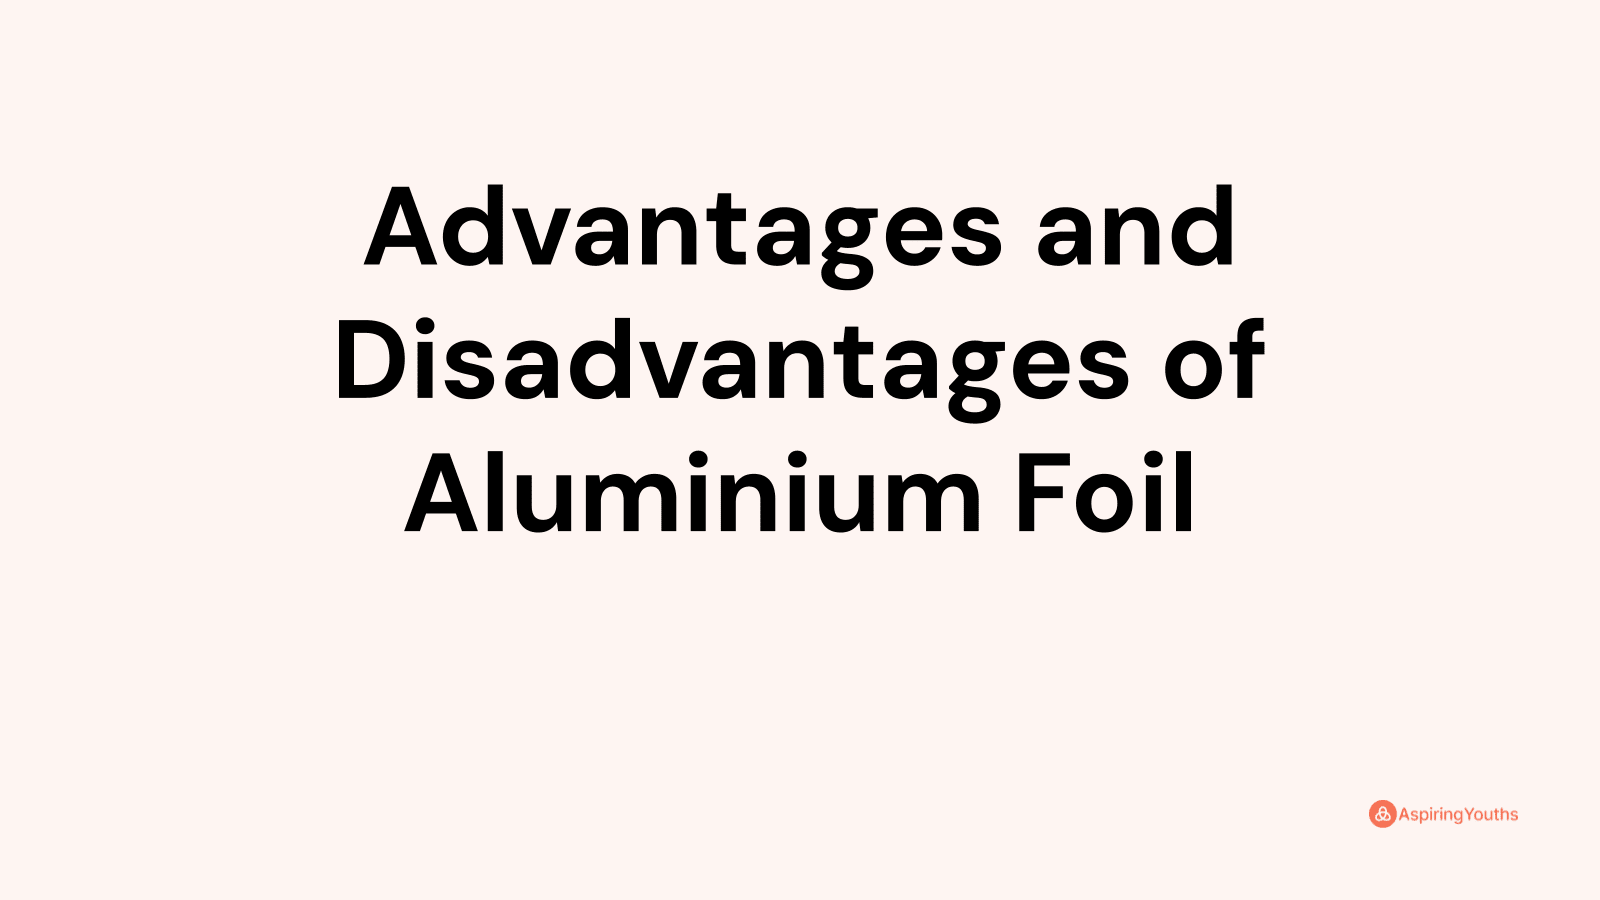 Advantages and disadvantages of Aluminium Foil